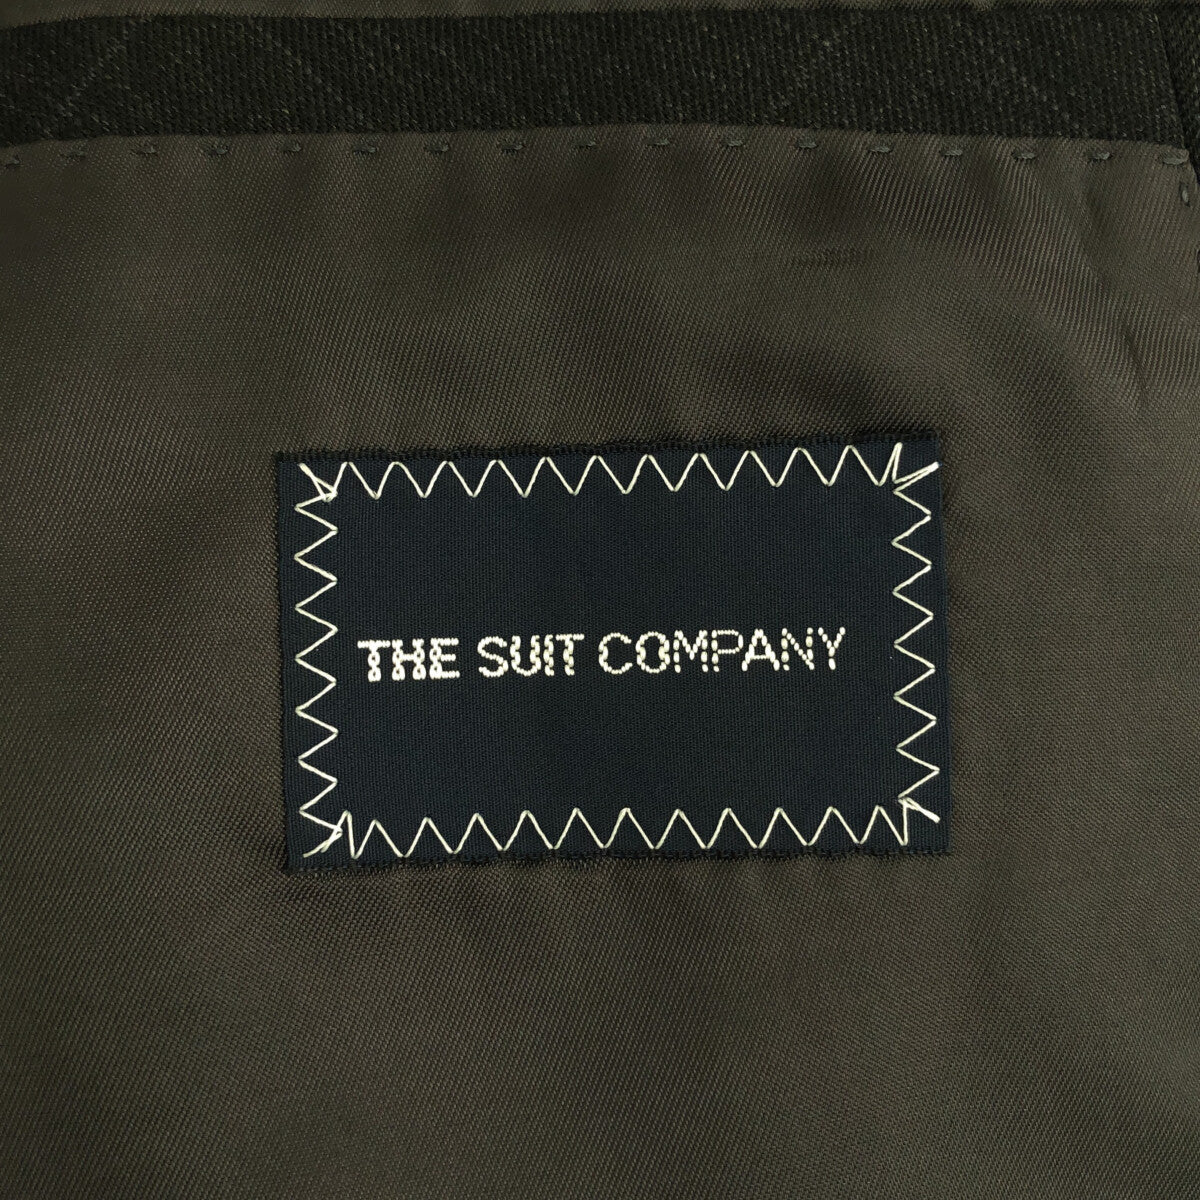 The Suit Company / ザ・スーツカンパニー | ウール混 チェック スリーピース スーツ | 170cm-4Drop | メンズ